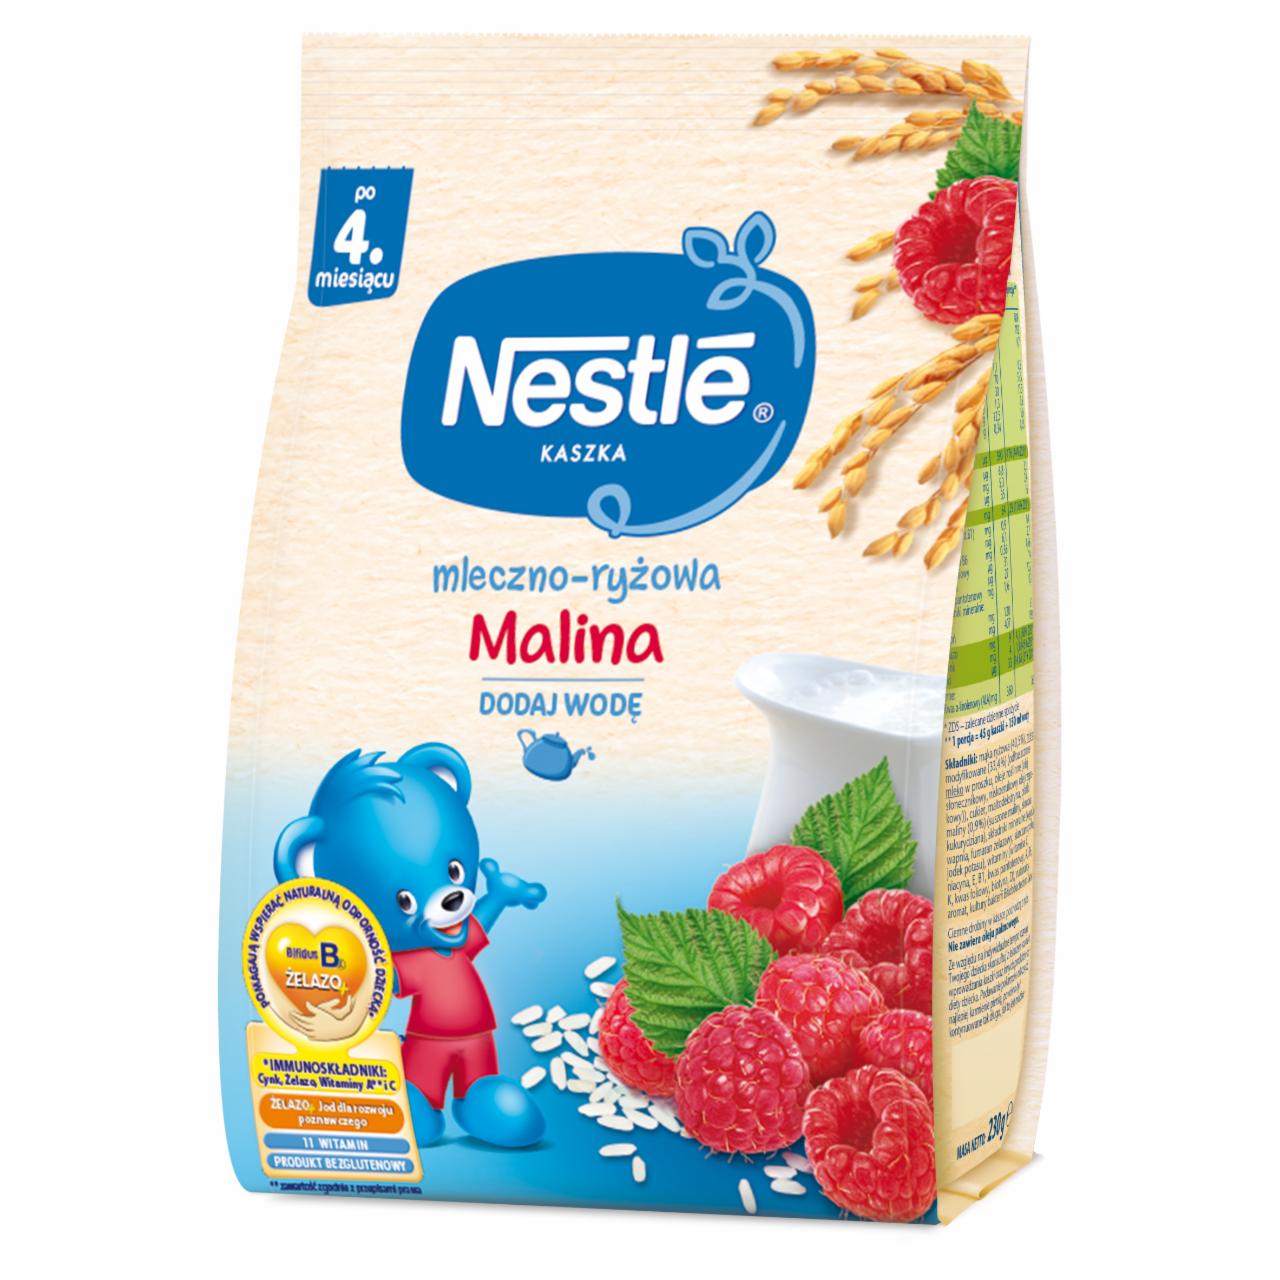 Zdjęcia - Kaszka mleczno-ryżowa malina dla niemowląt po 4. miesiącu Nestlé